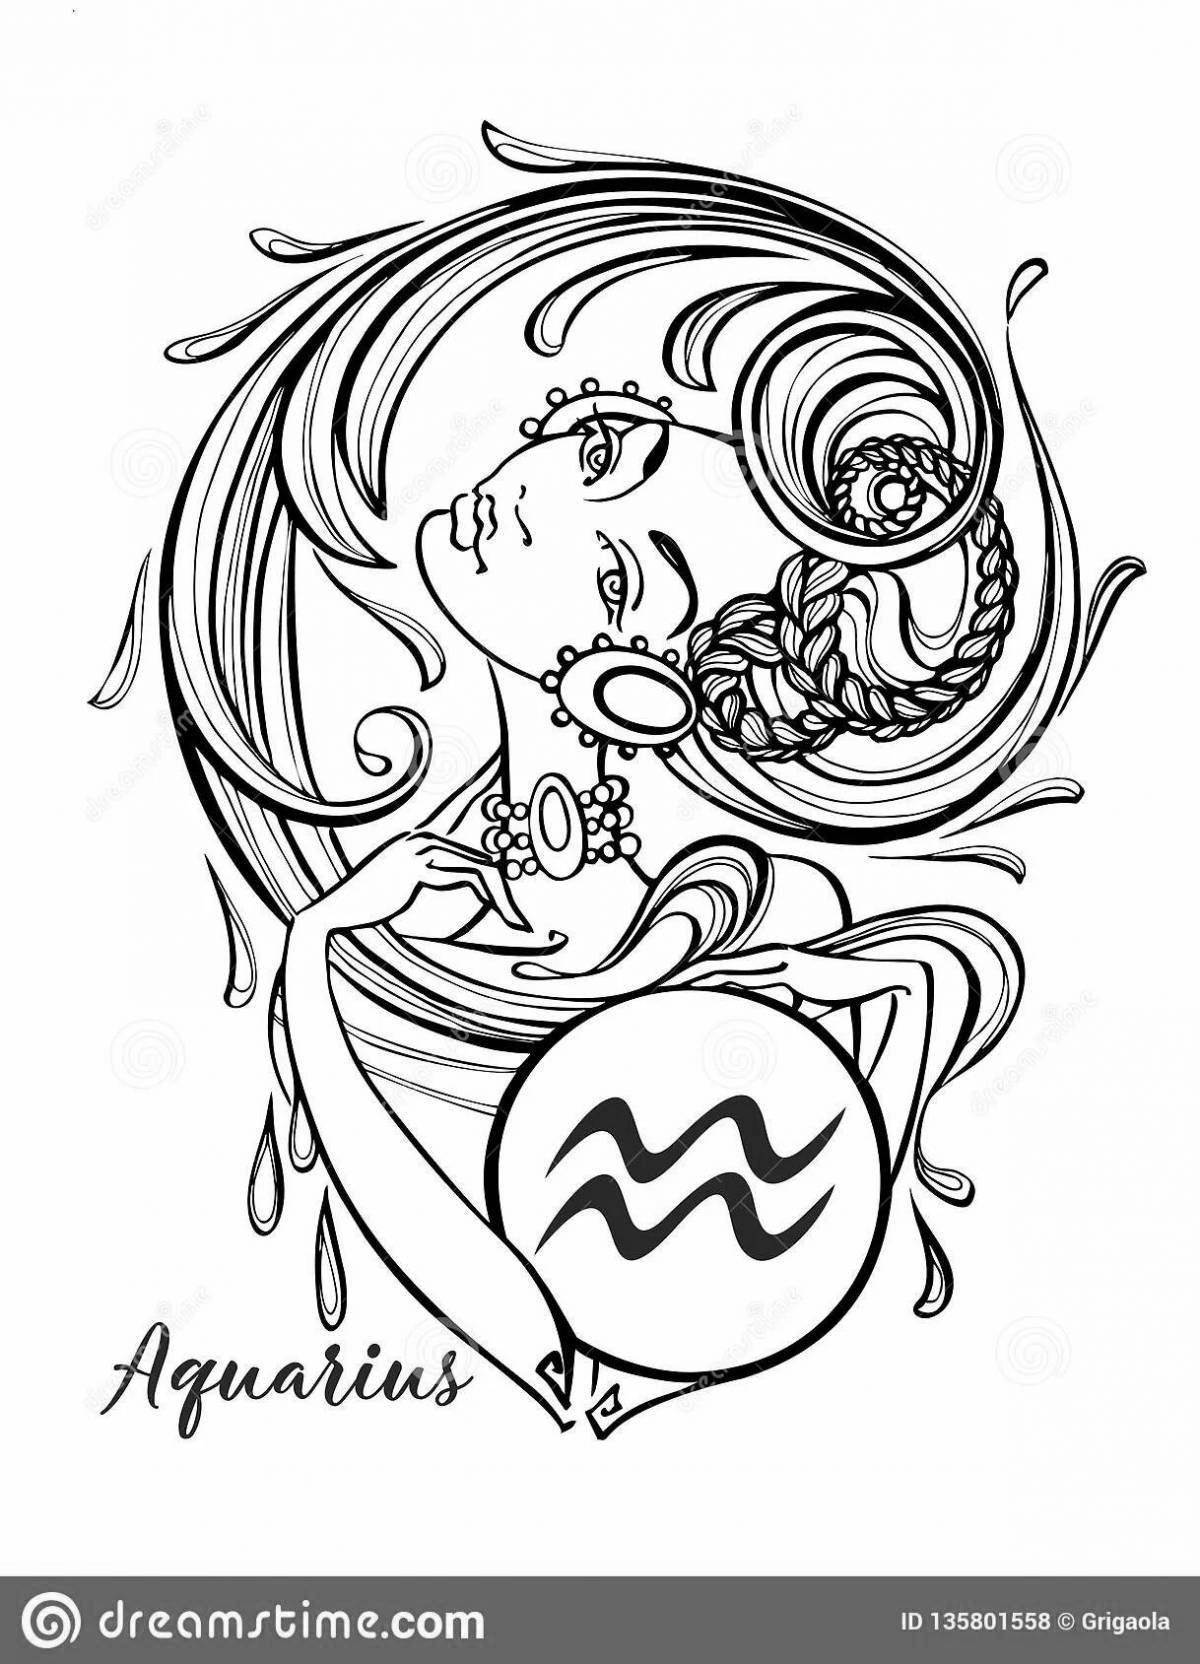 Aquarius zodiac sign #1